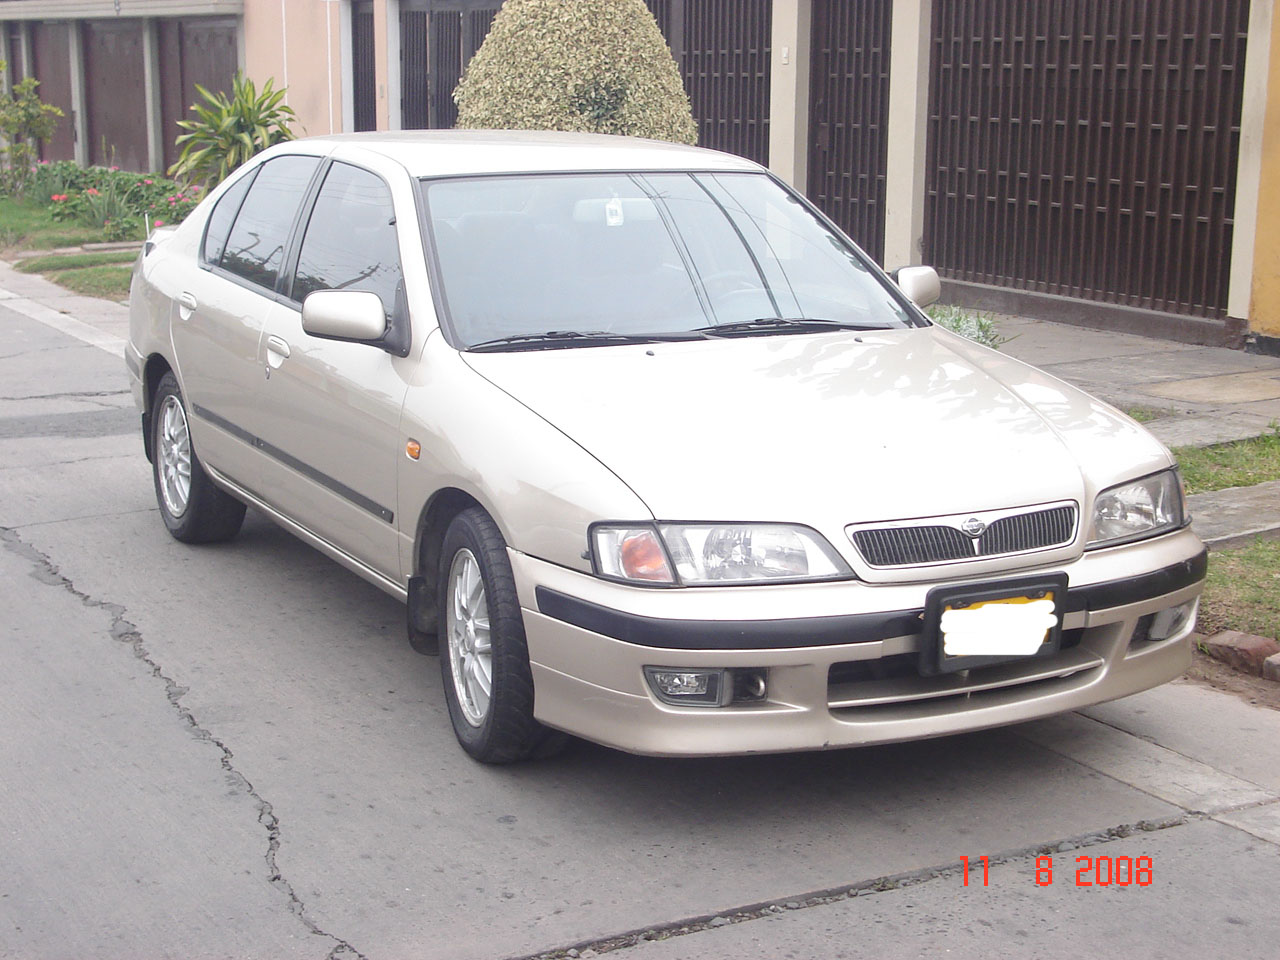 Ниссан примера 2000 год. Ниссан премьера 2000. Ниссан премьера 98 года. Ниссан примера 2000 года. Nissan primera 98 год.